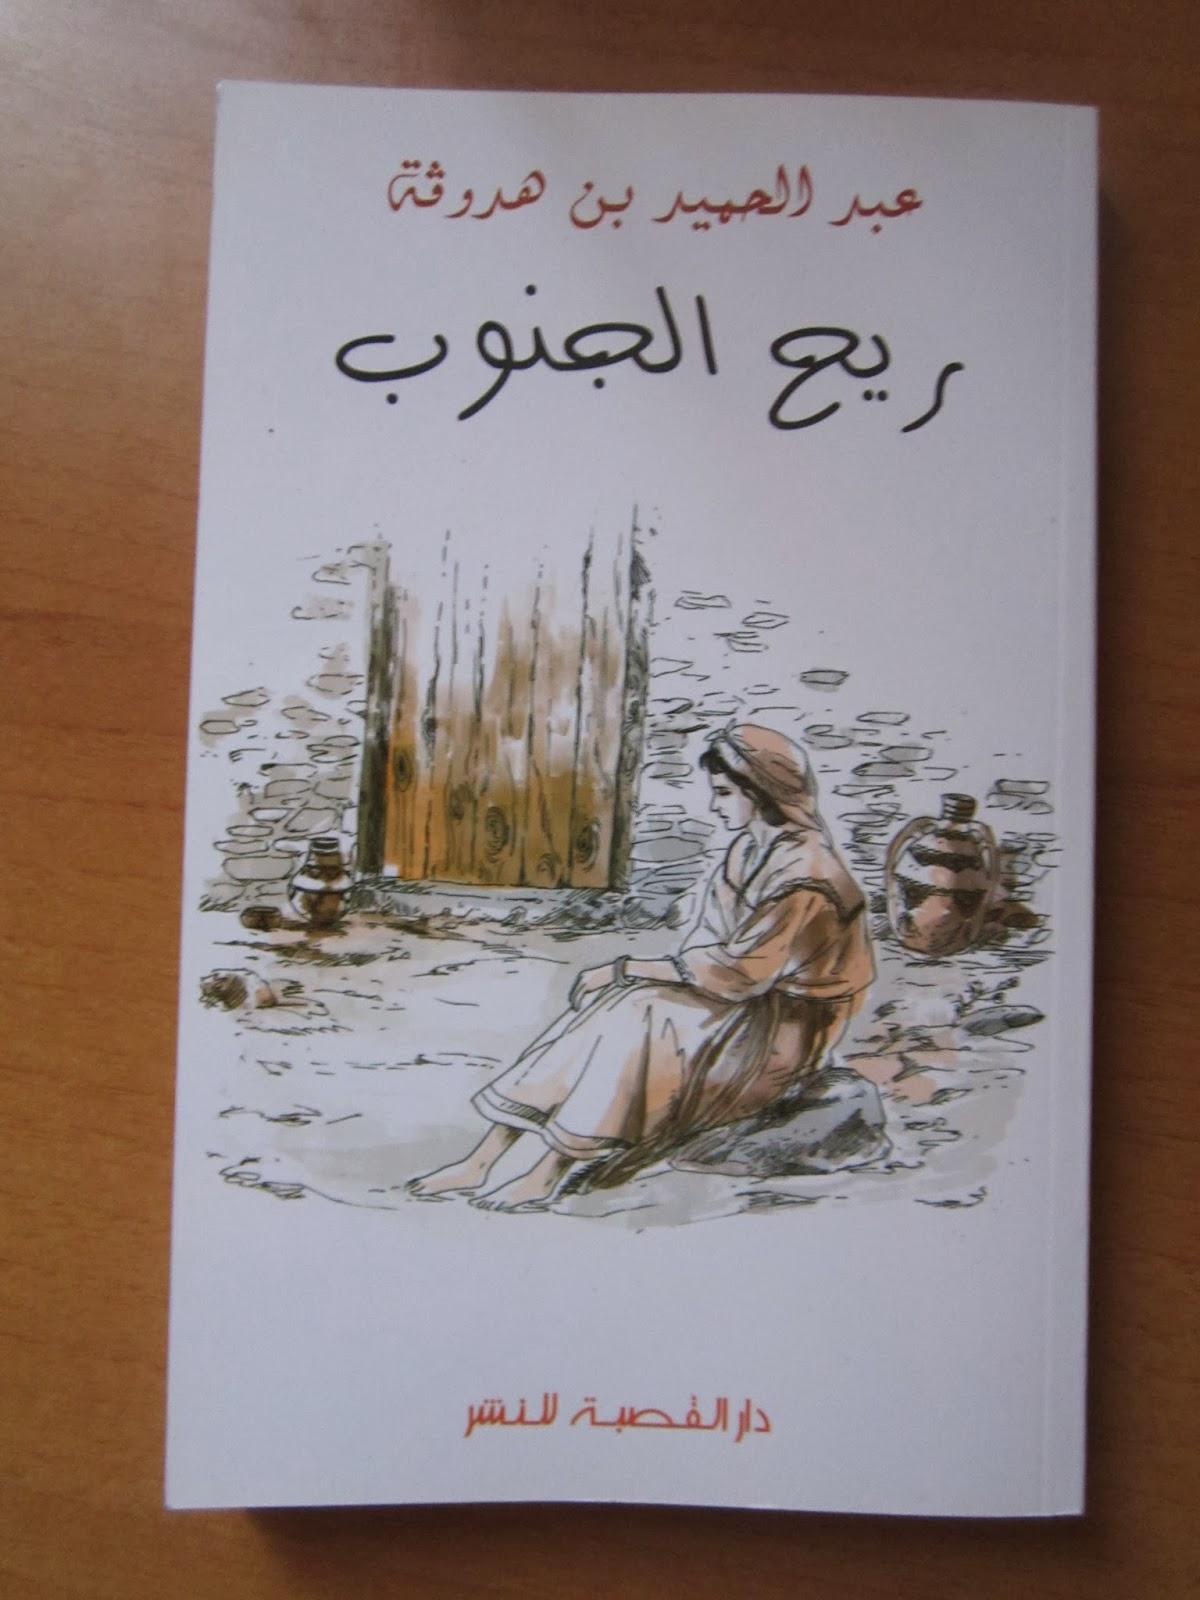 الرواية الجزائرية ريح الجنوب رواية عبد الحميد بن هدوقة الأولى عن الثورة الزراعية في الجزائر